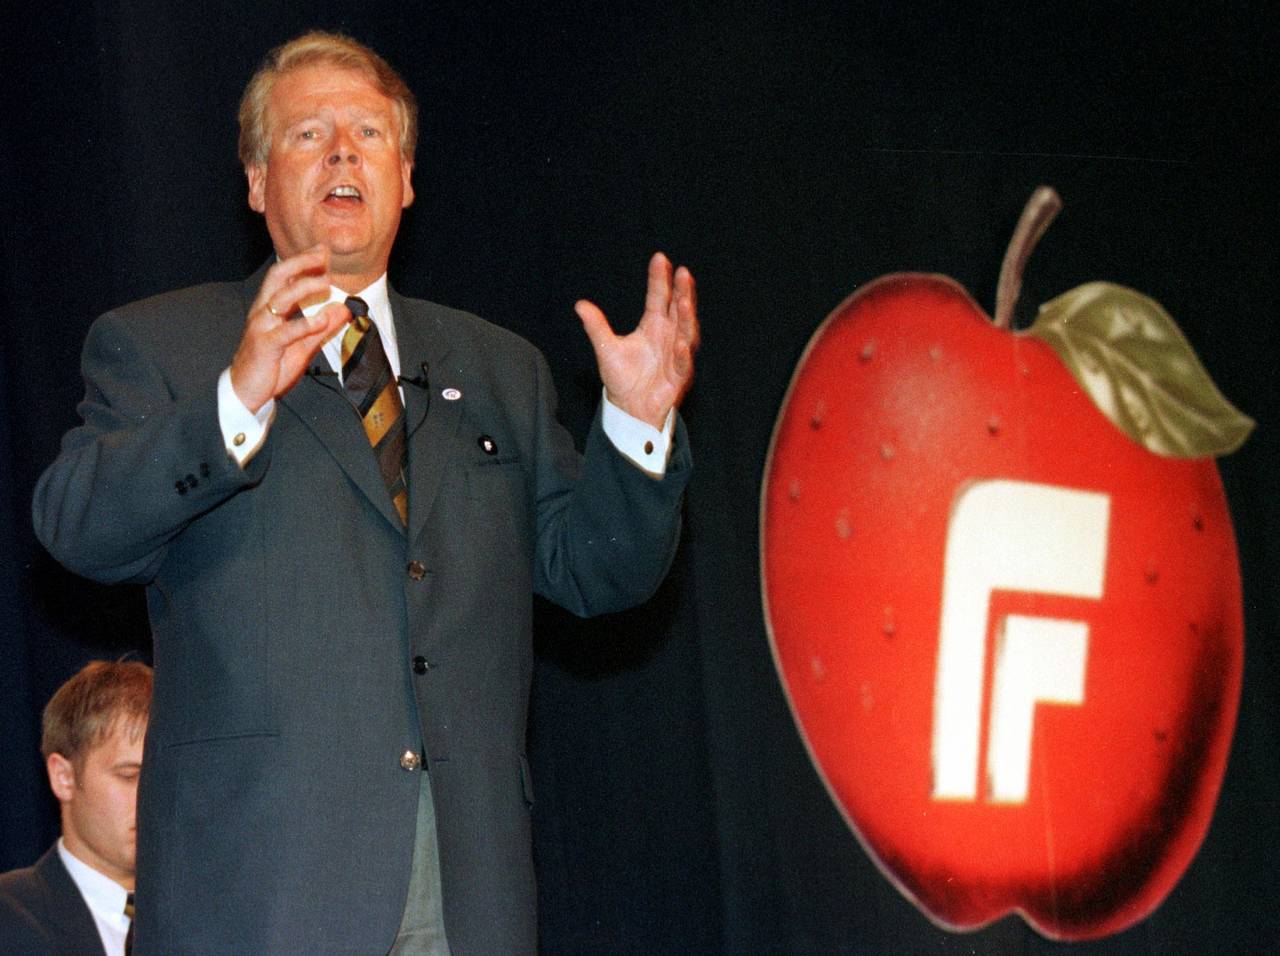 Tidligere partileder Carl I. Hagen med en tidligere utgave av partiets eplelogo. Apples første eple-logo ble tatt i bruk i 1977, mens Frp ikke kom med eplet sitt før tidlig på 1990-tallet. Arkivfoto: Lise Åserud / NTB scanpix